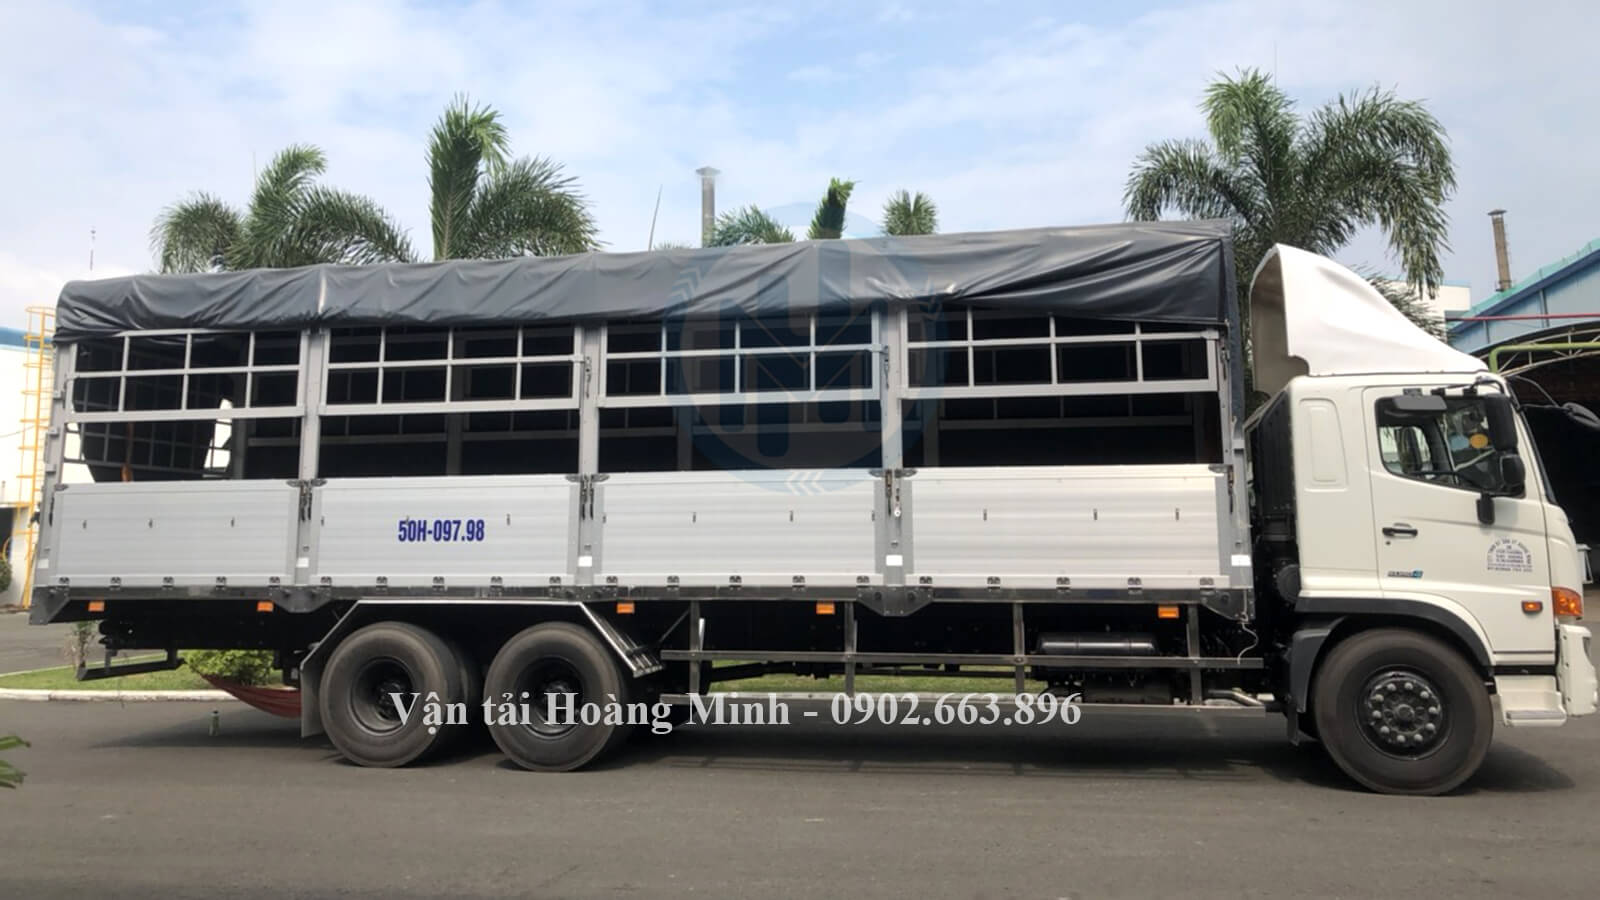 Cho thuê xe tải chở hàng Biên Hòa uy tín